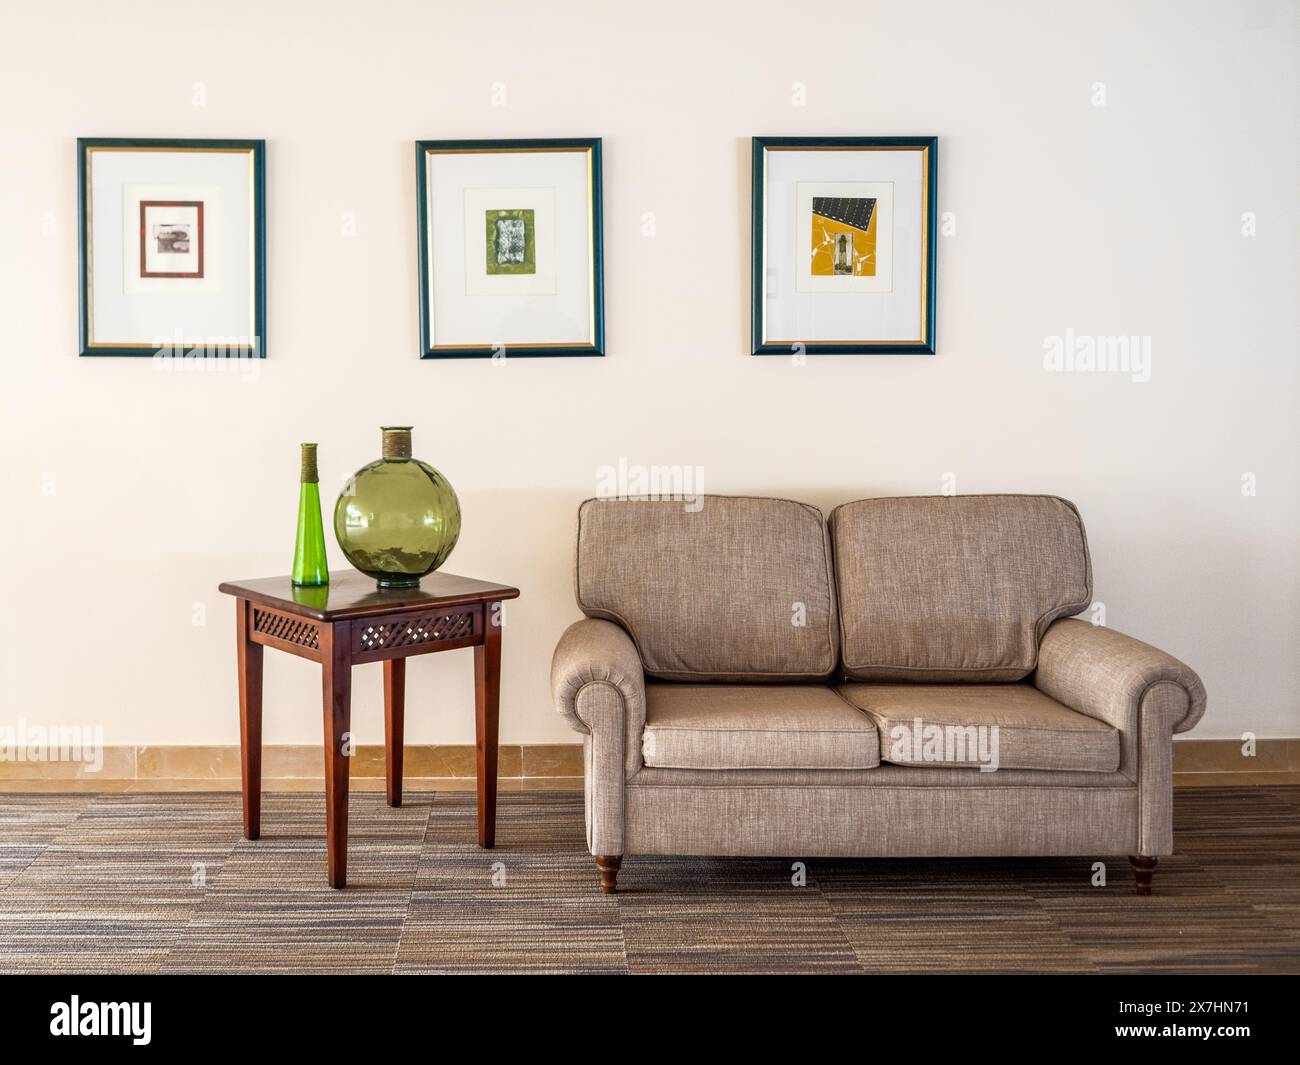 Wohnbereich im Innendesign mit Sofa, weichen Möbeln, Tisch, Gläsern und Wandbildern Stockfoto